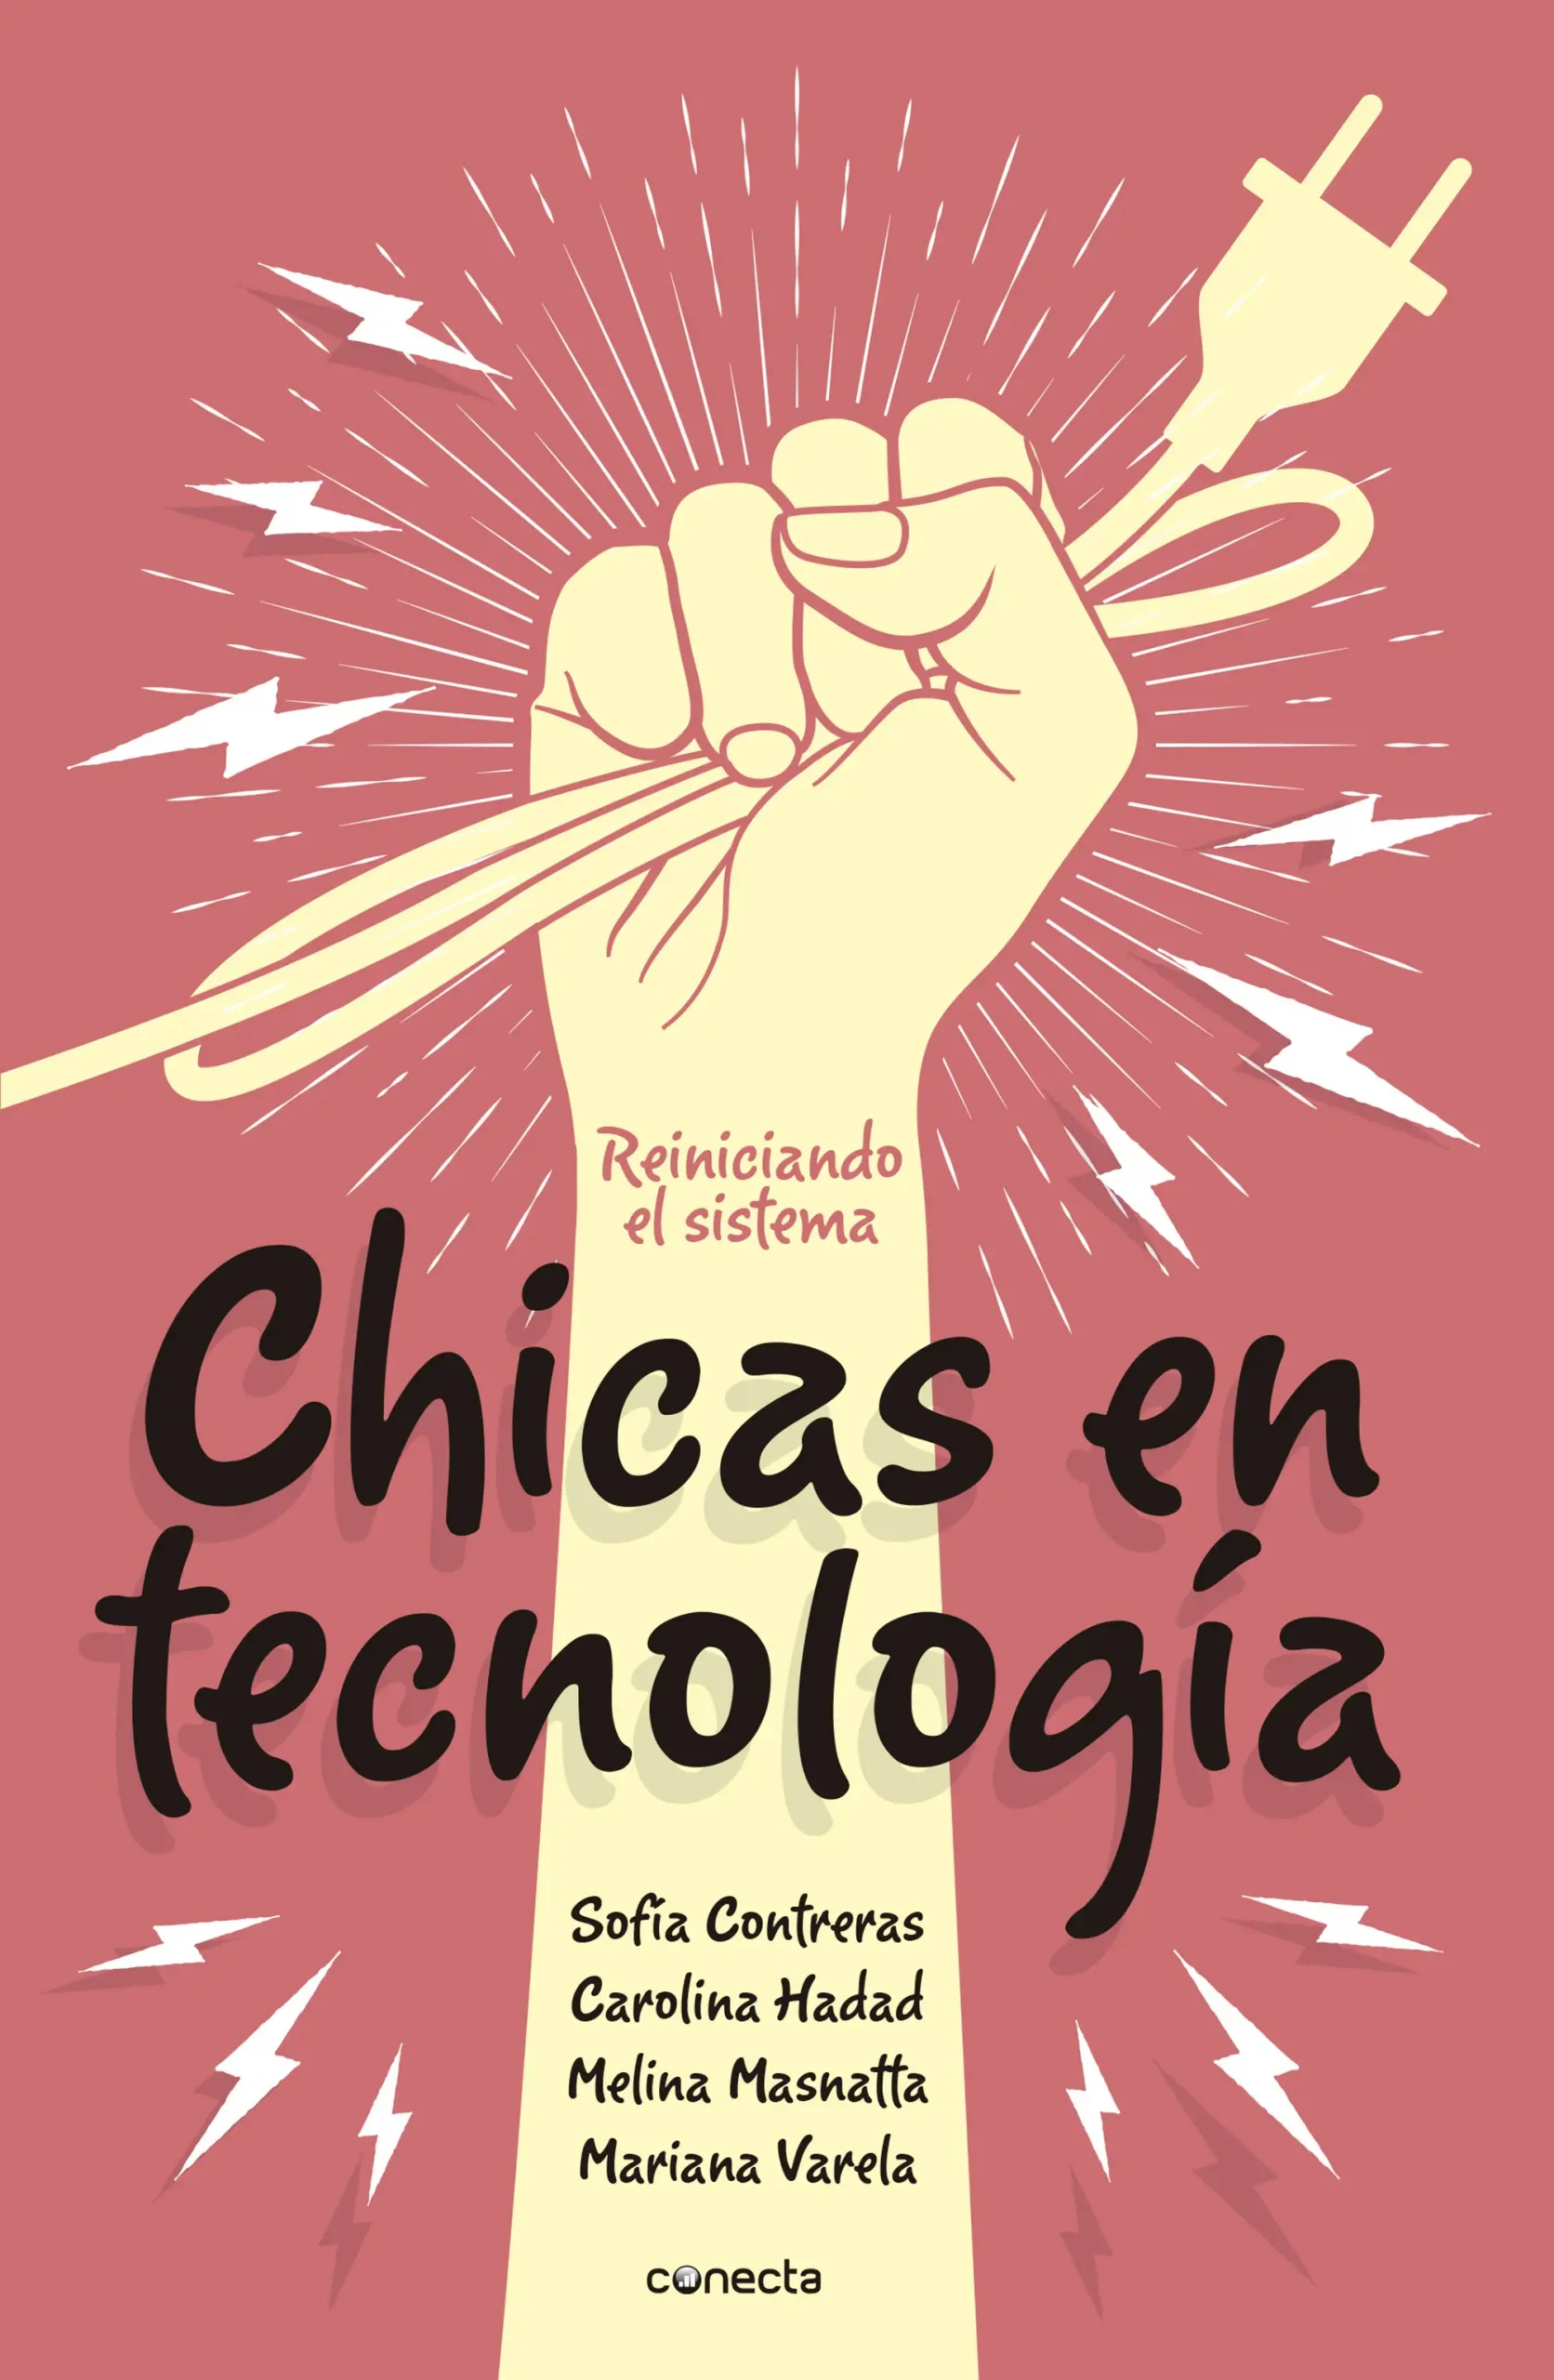 Chicas en Tecnología: Reiniciando el sistema